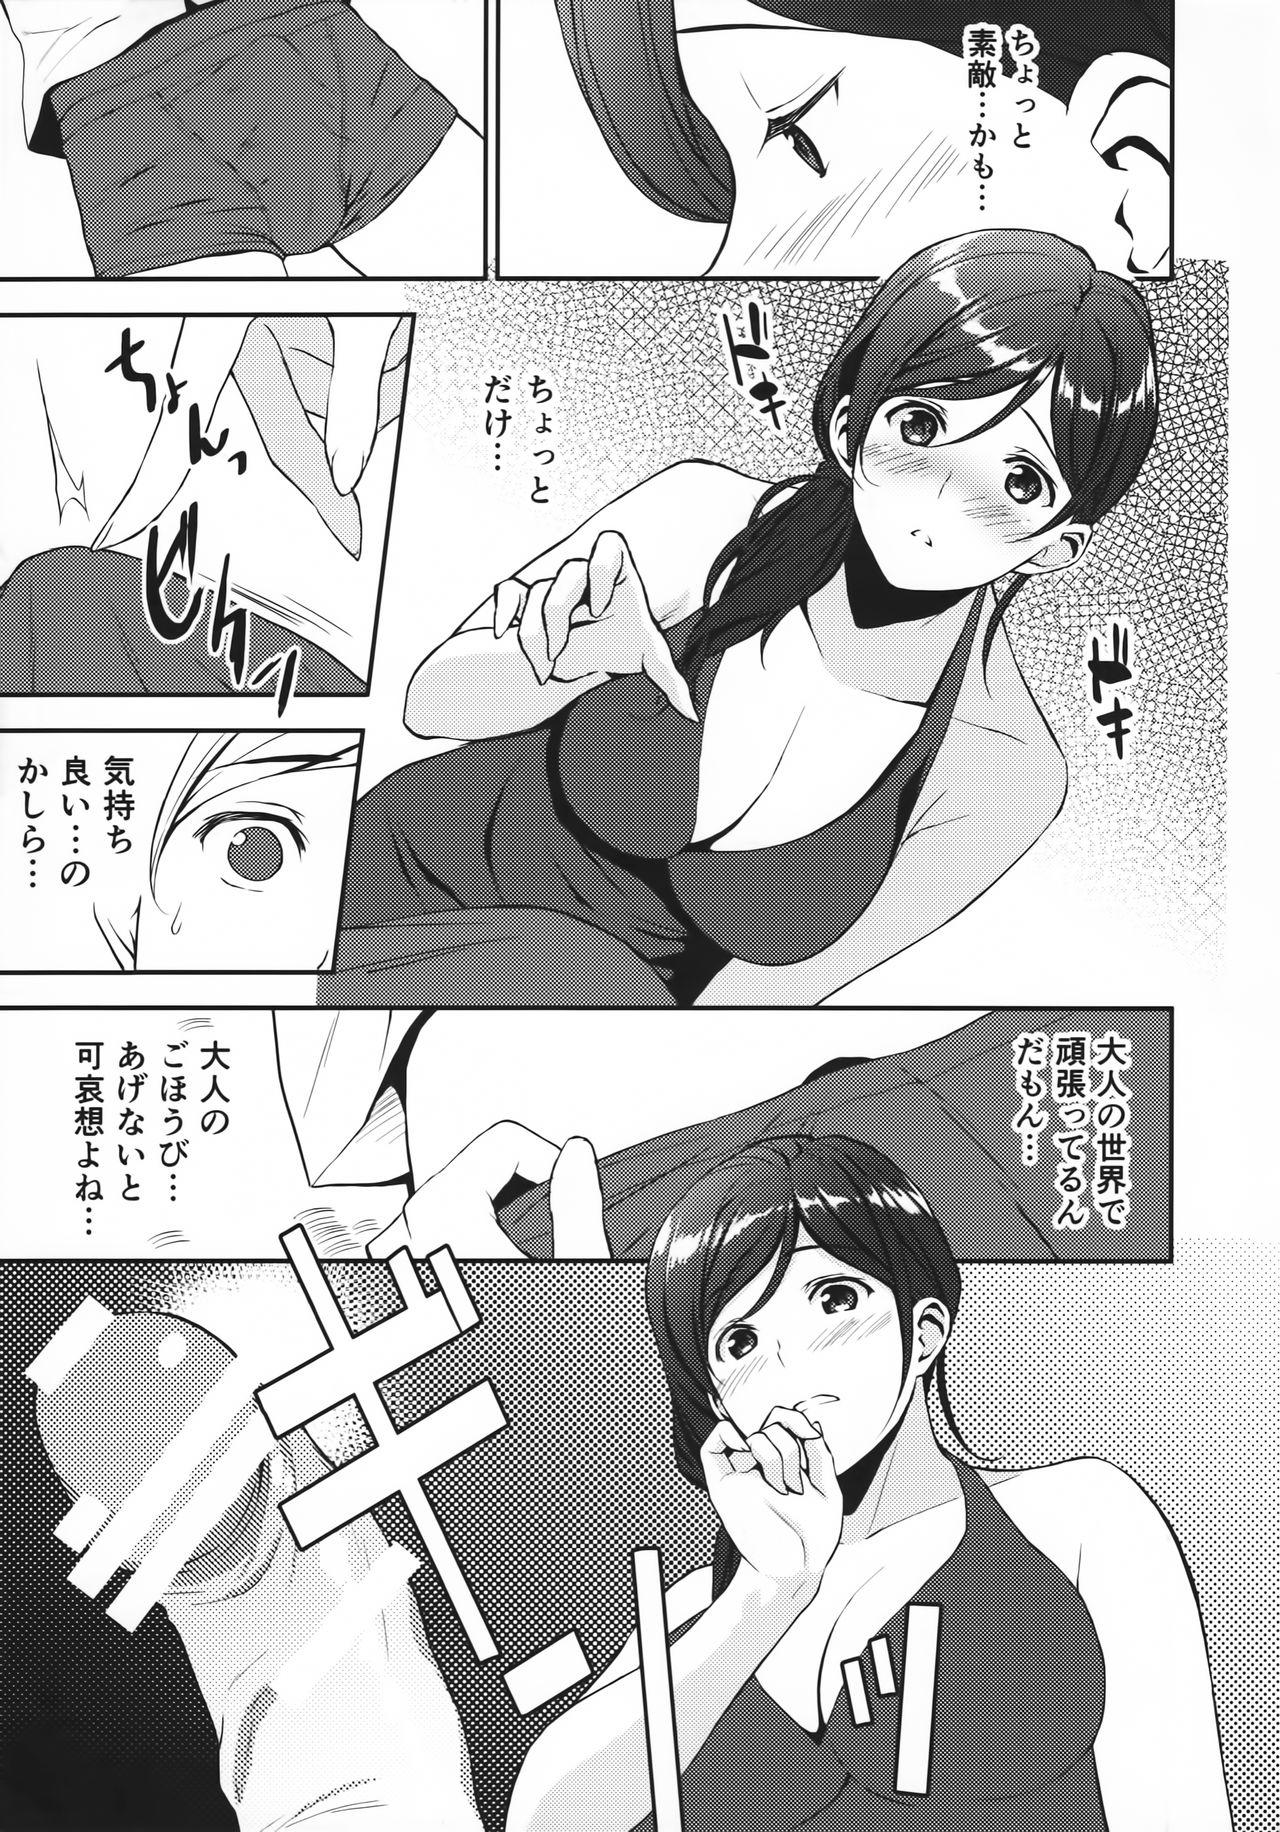 Hand Job 12-gatsu no Hirou - 3-gatsu no lion Prostitute - Page 7